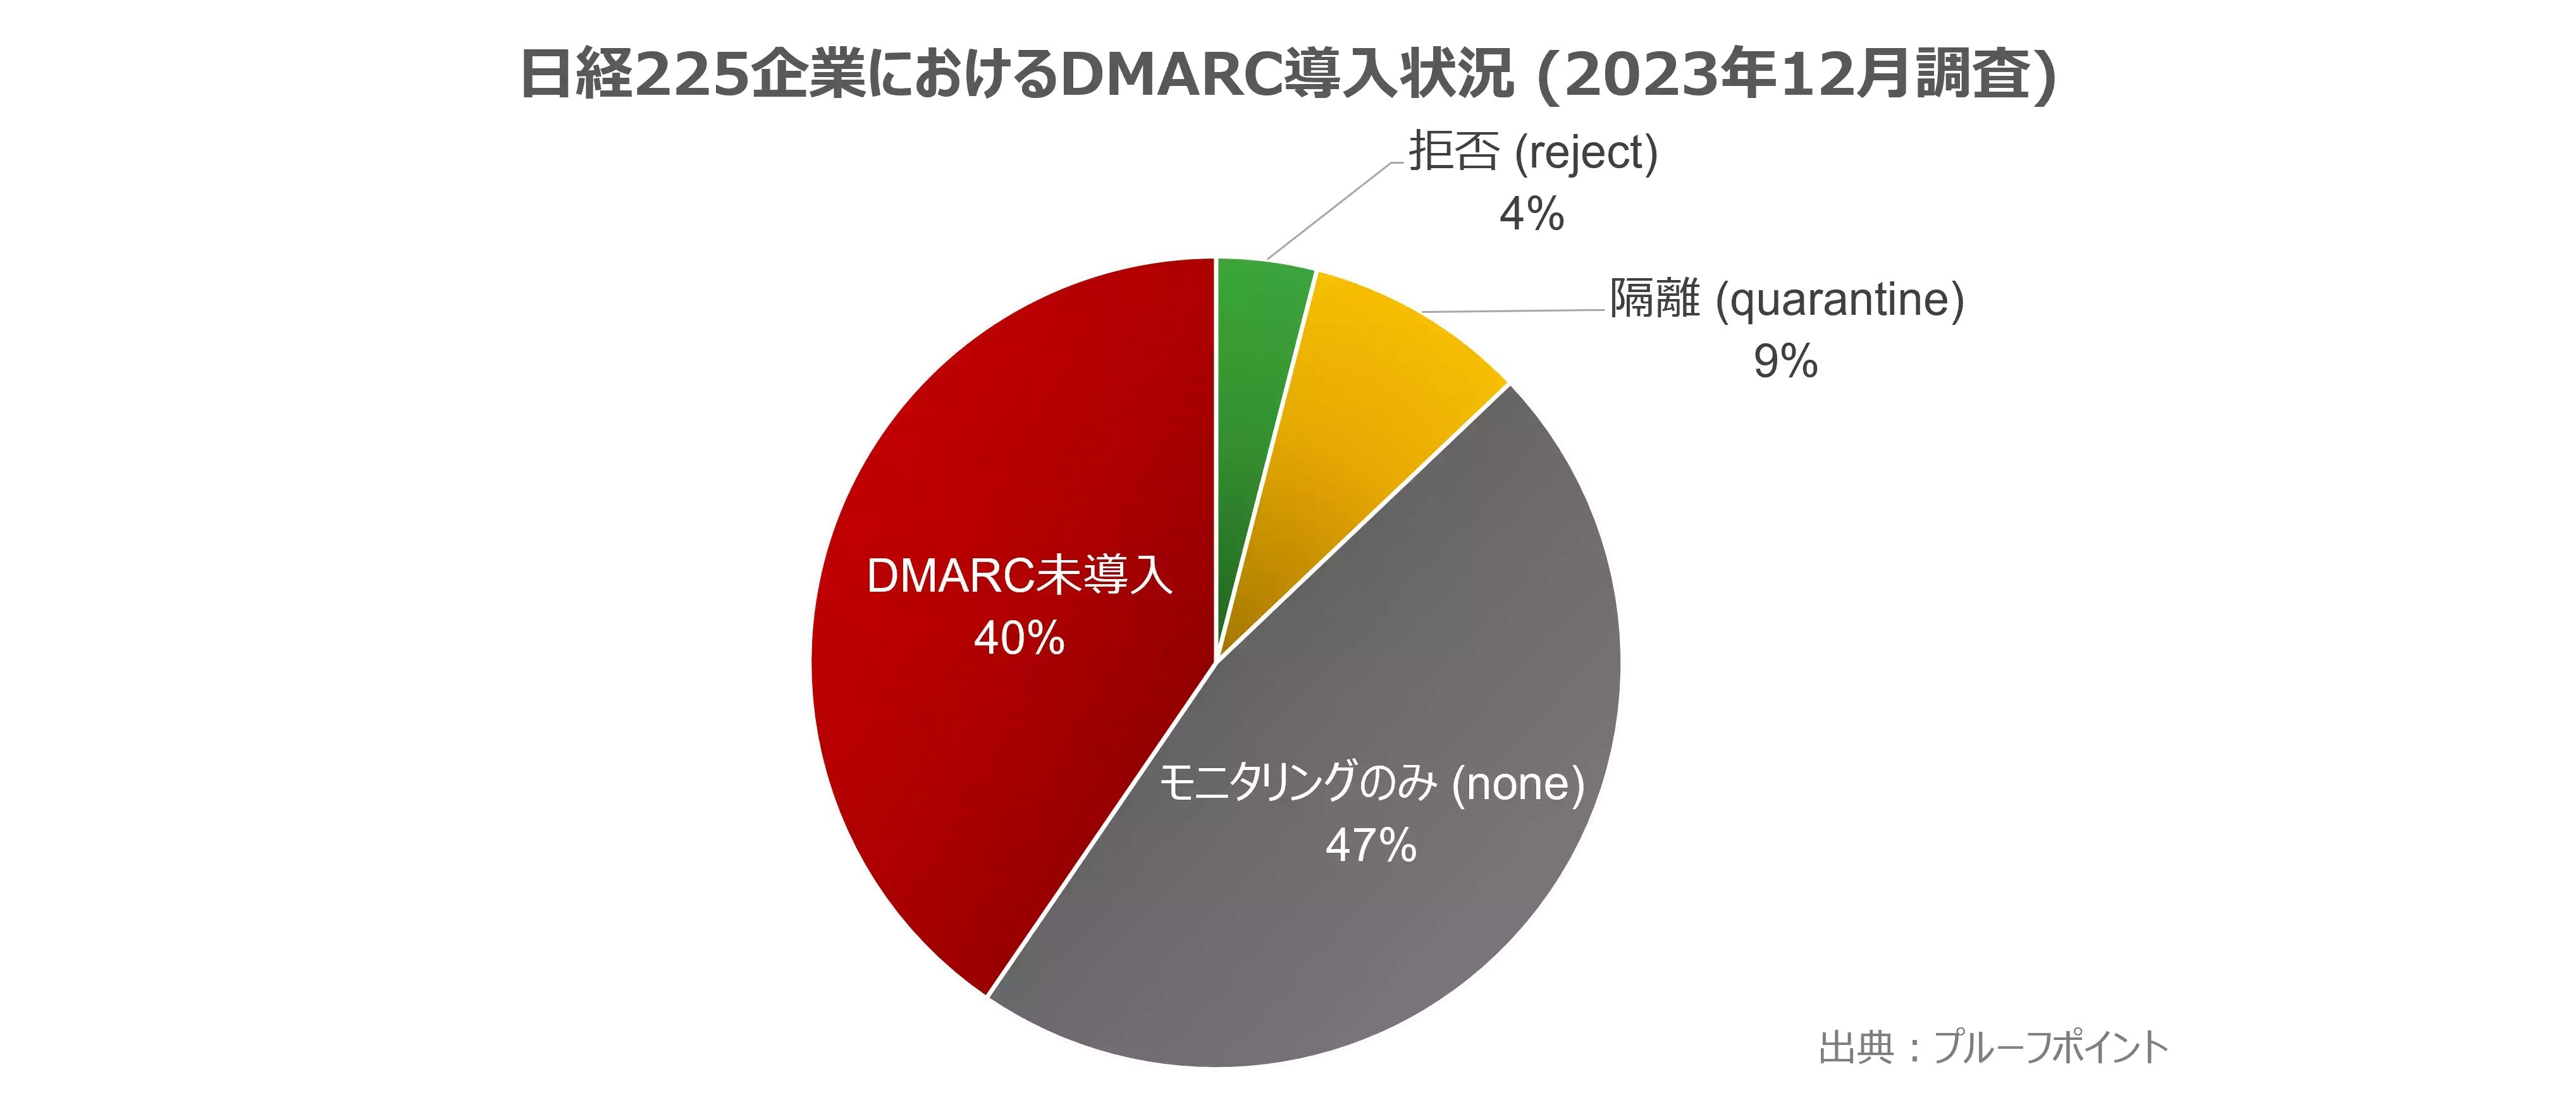 日経225企業におけるDMARC導入状況(2023年12月調査)